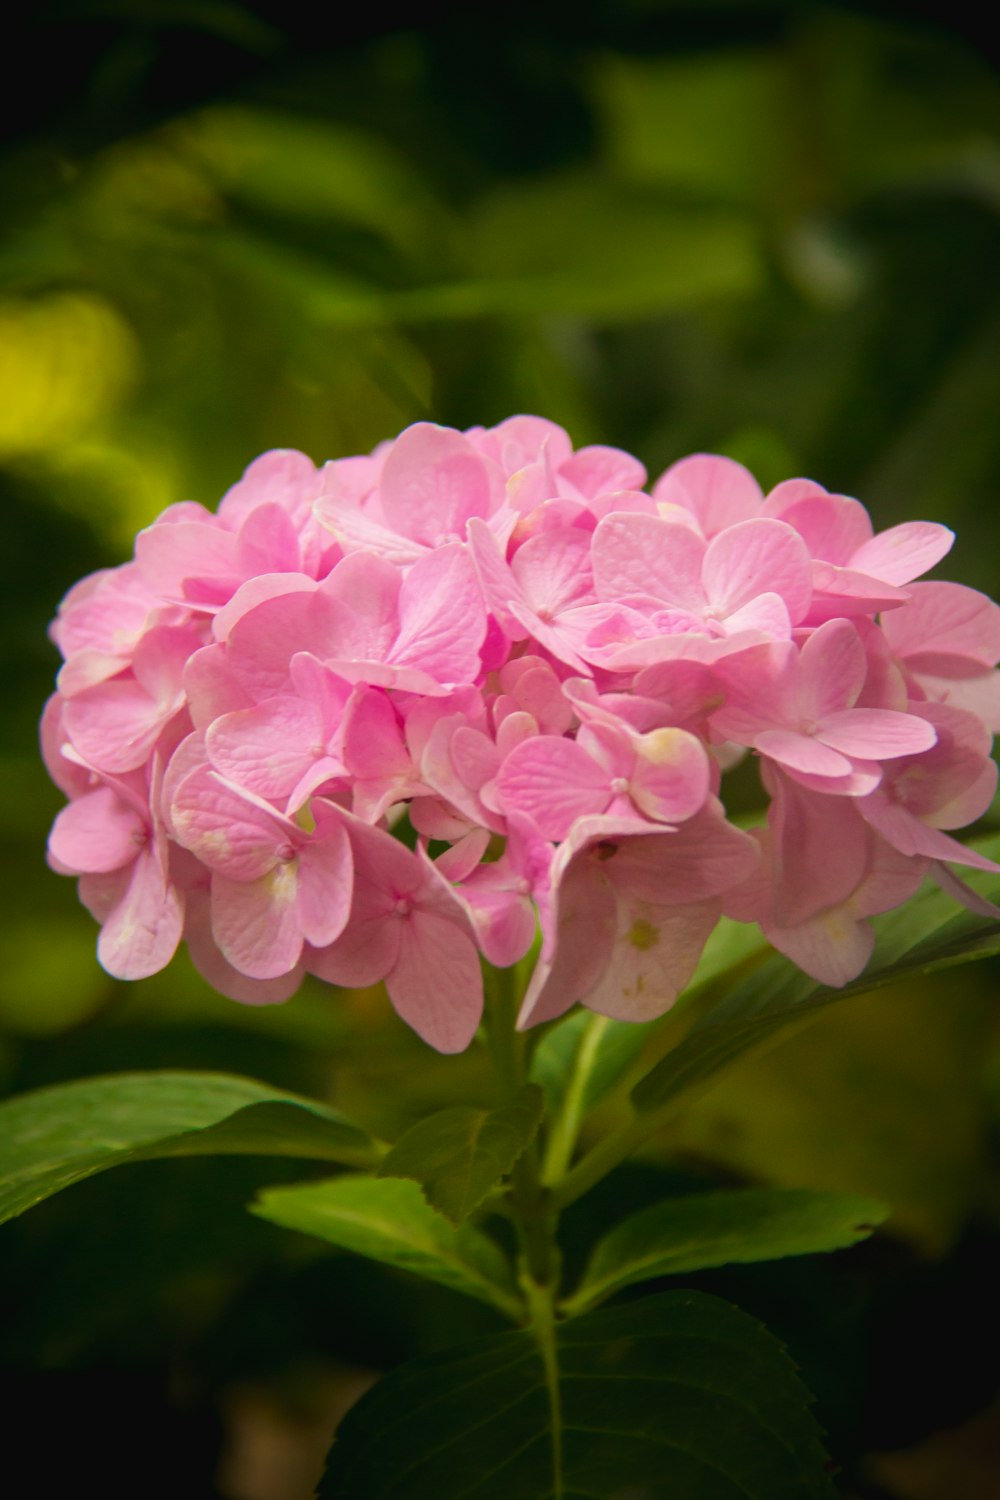 fiore rosa e bianco nella fotografia con obiettivo macro